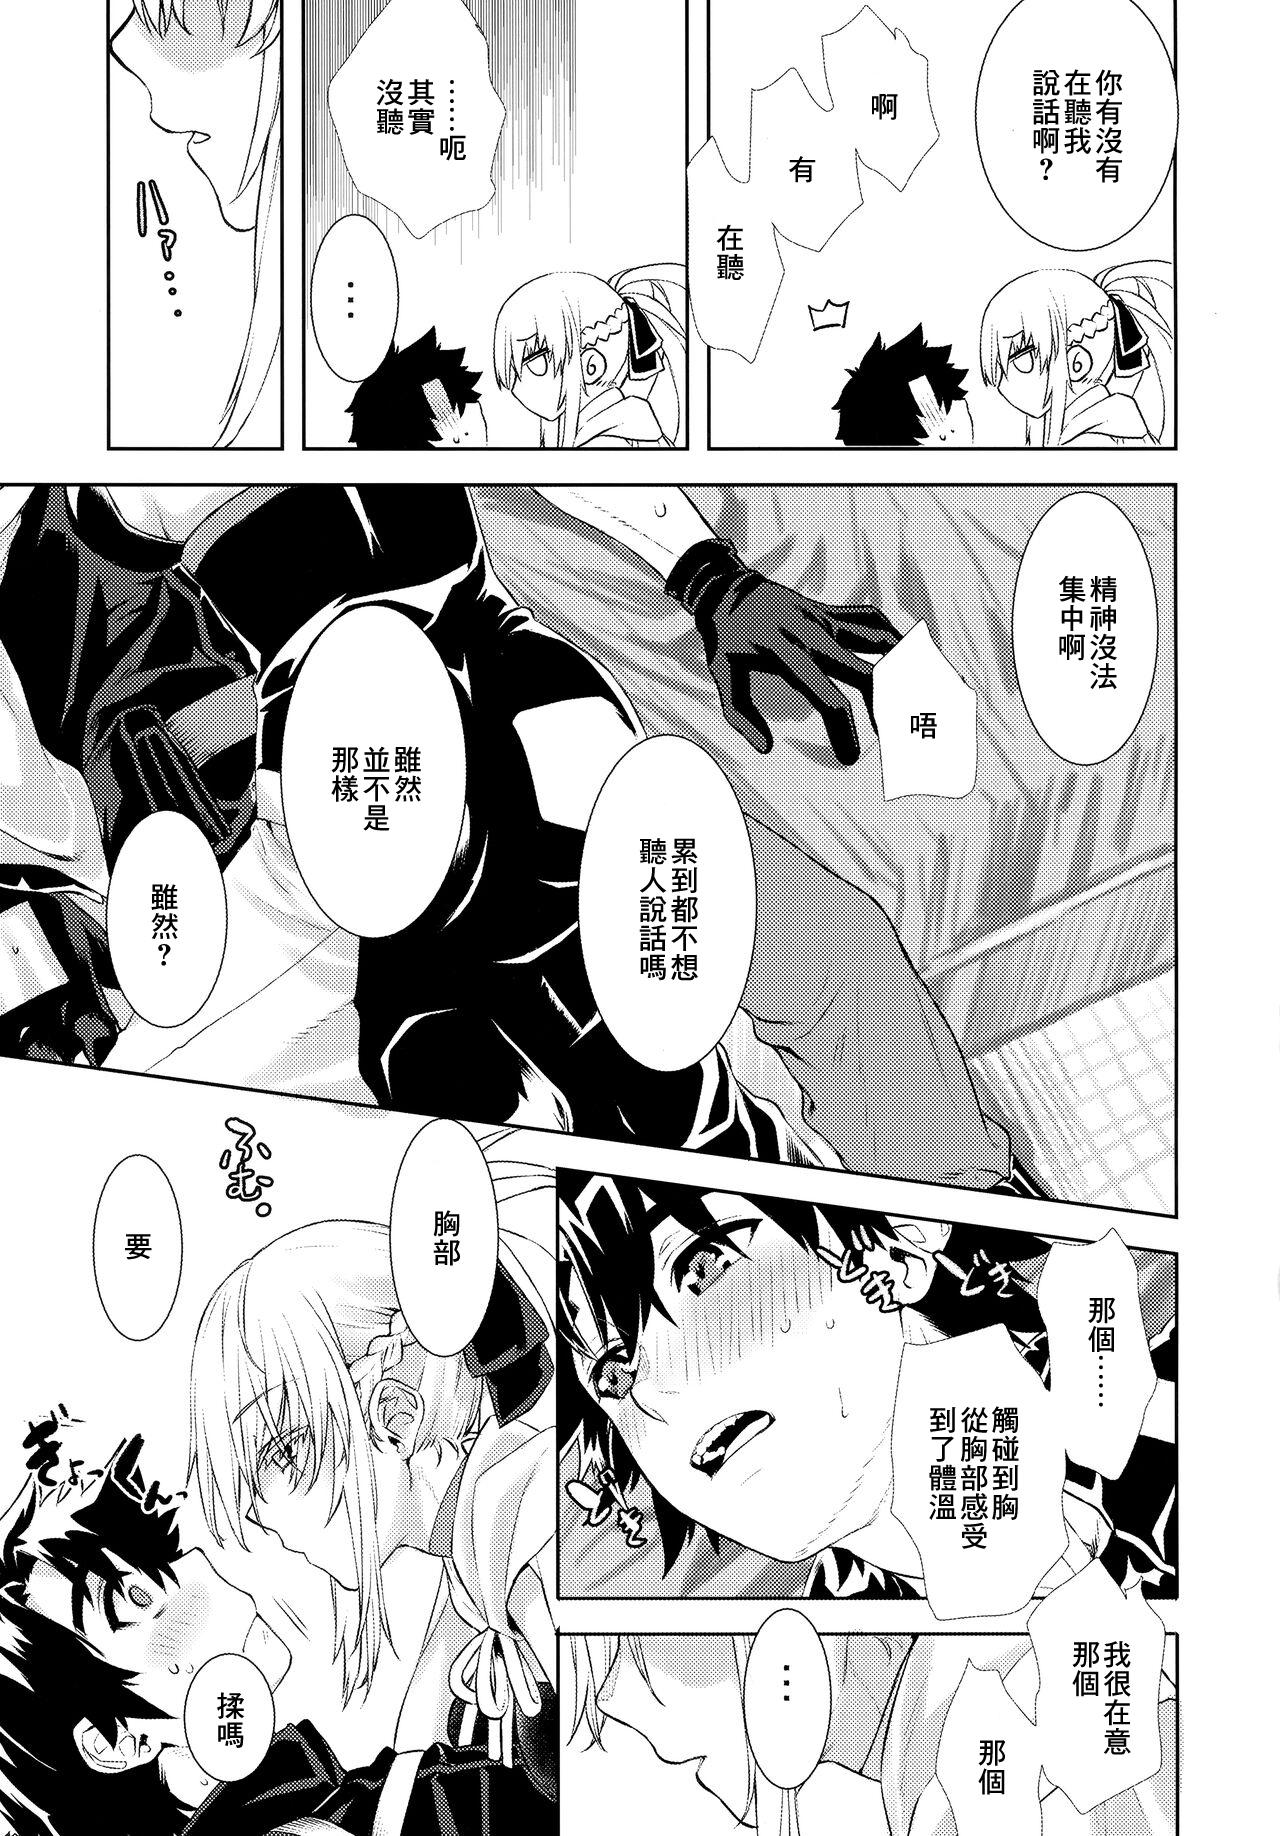 Blackmail Joouheika no Seiteki Shinan 1.5 - Fate grand order Pene - Page 4